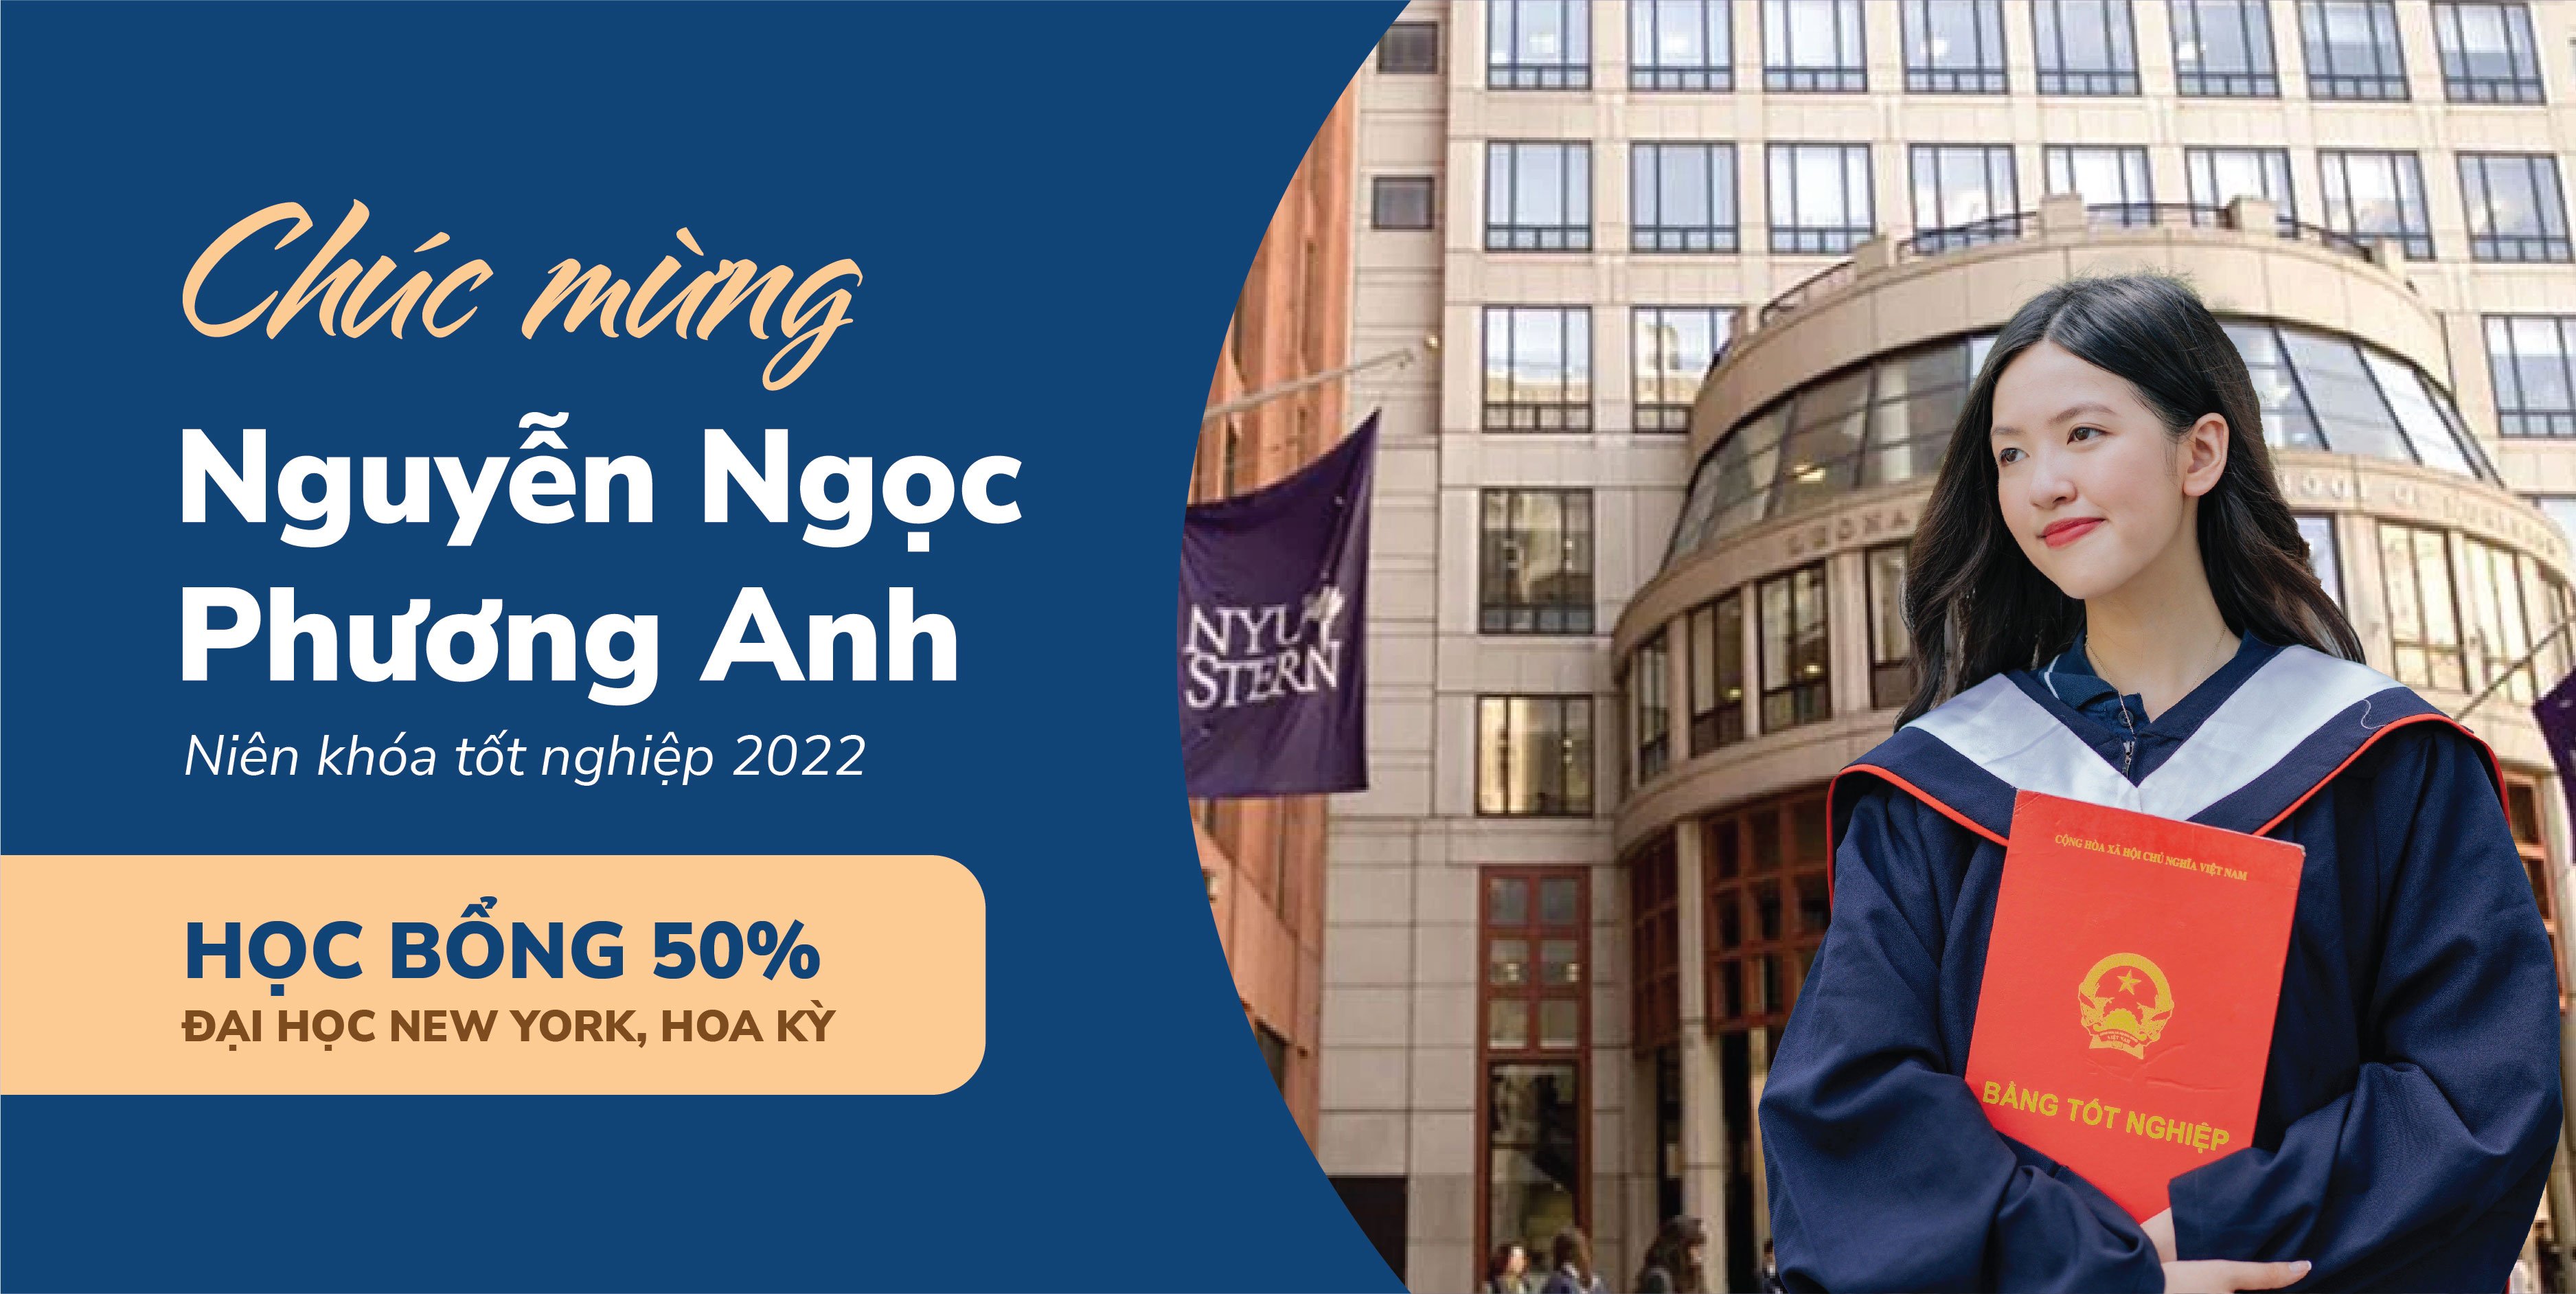 Nguyen Ngoc Phuong Anh